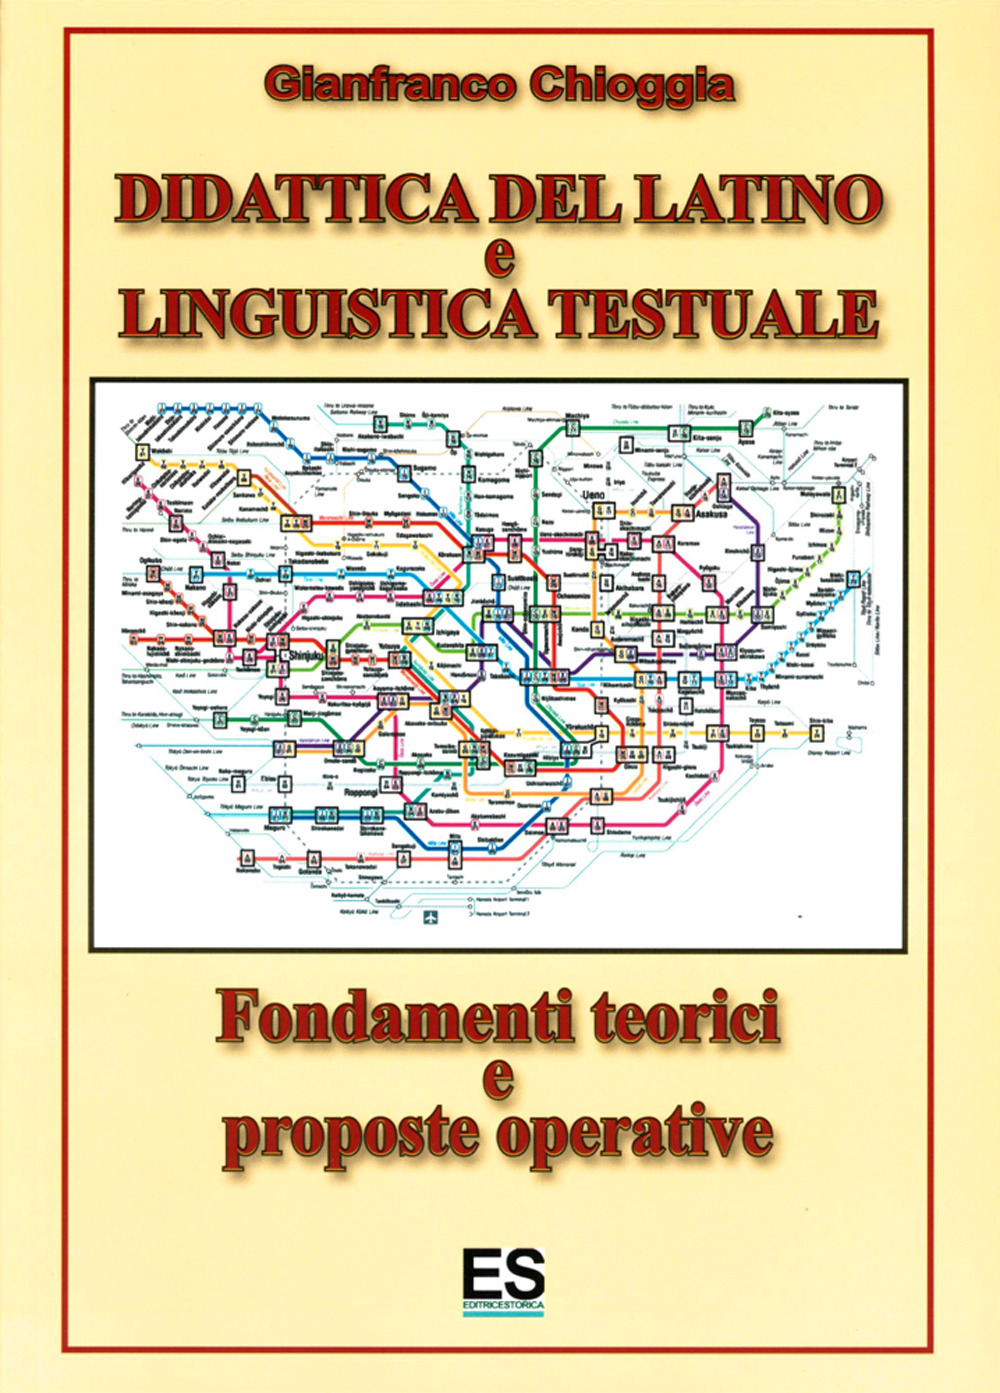 Didattica del latino e linguistica testuale. Fondamenti teorici e prosposte operative